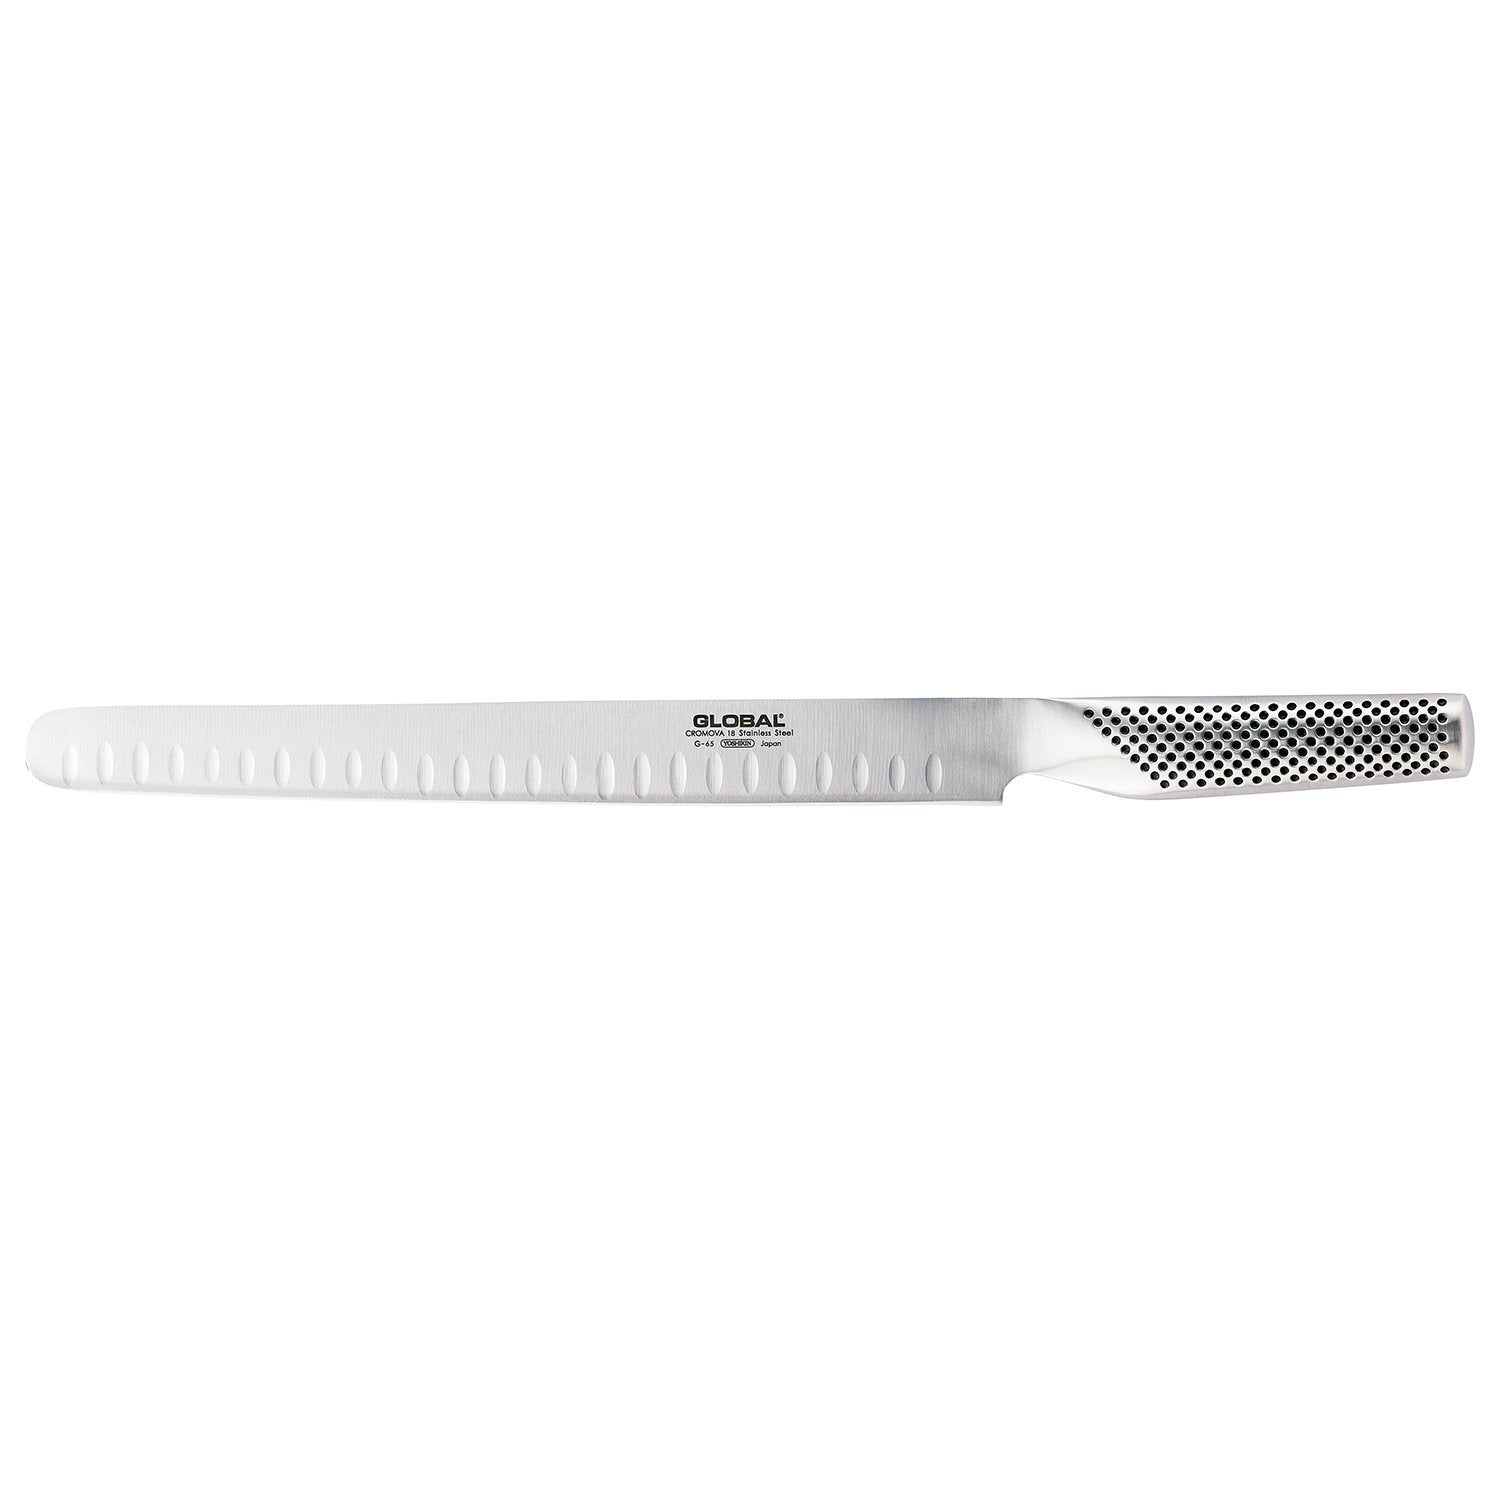 Global G 65 skinklaxkniv, Kulle, 27 cm